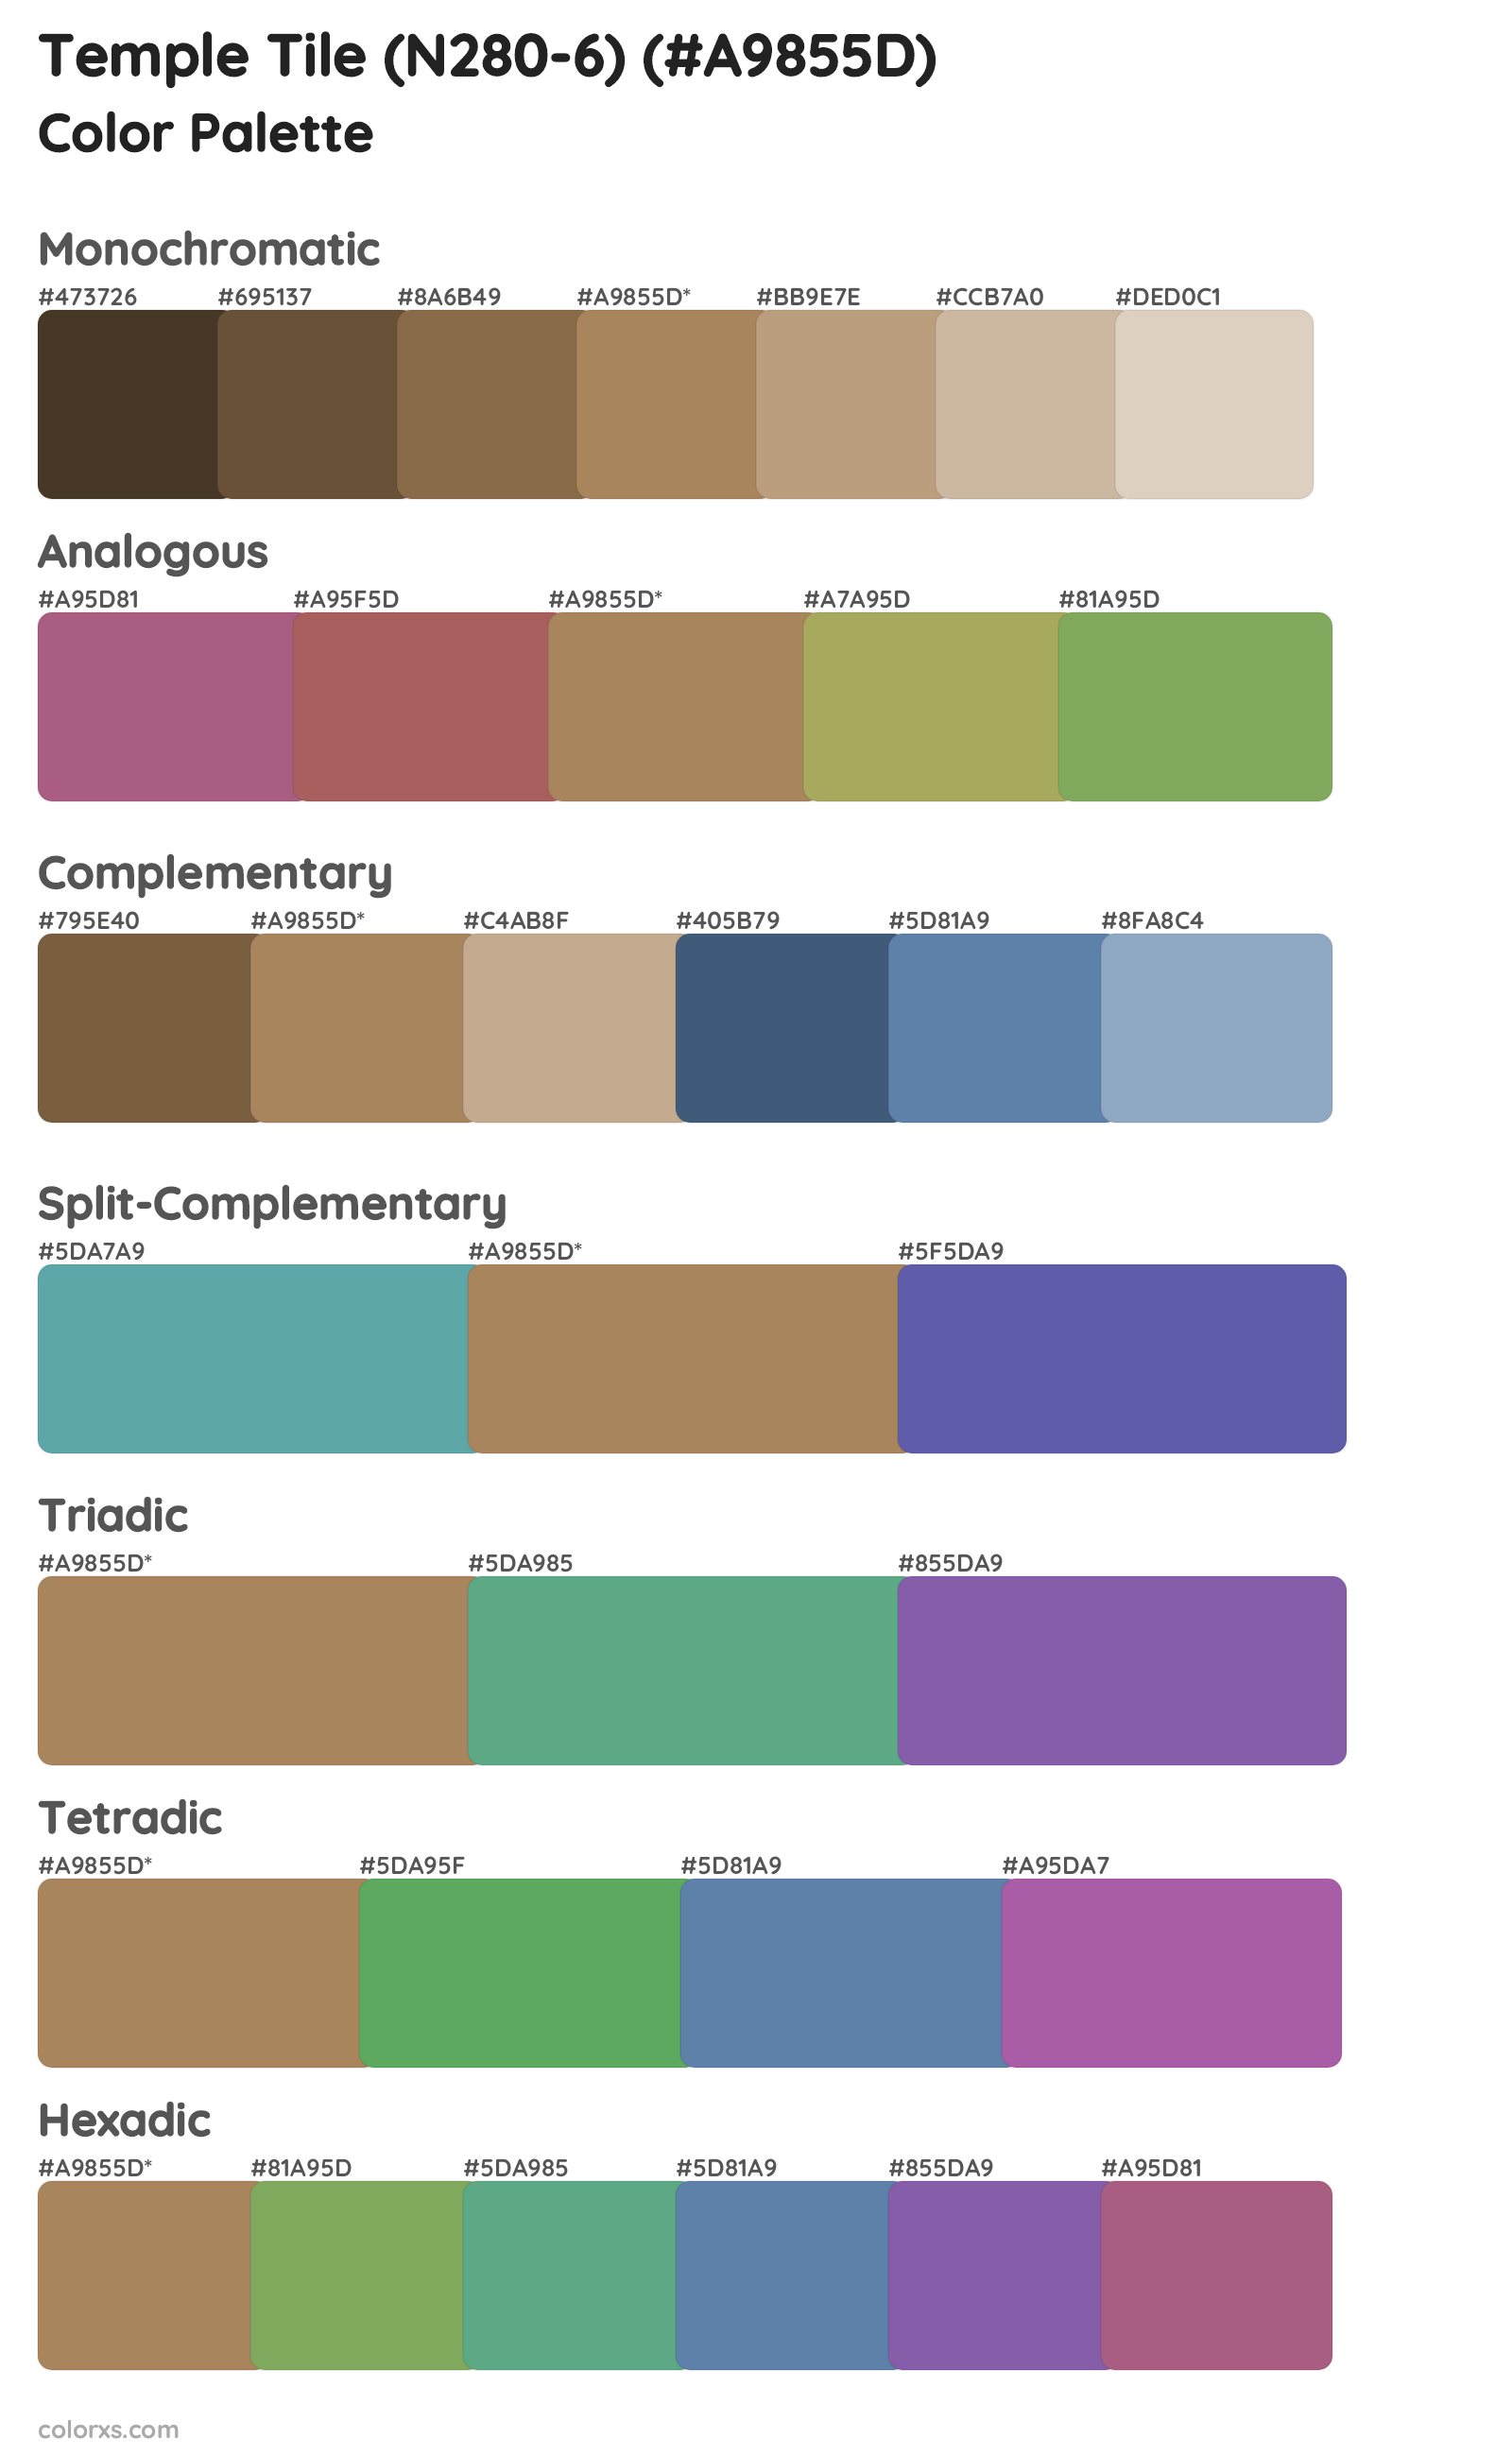 Temple Tile (N280-6) Color Scheme Palettes